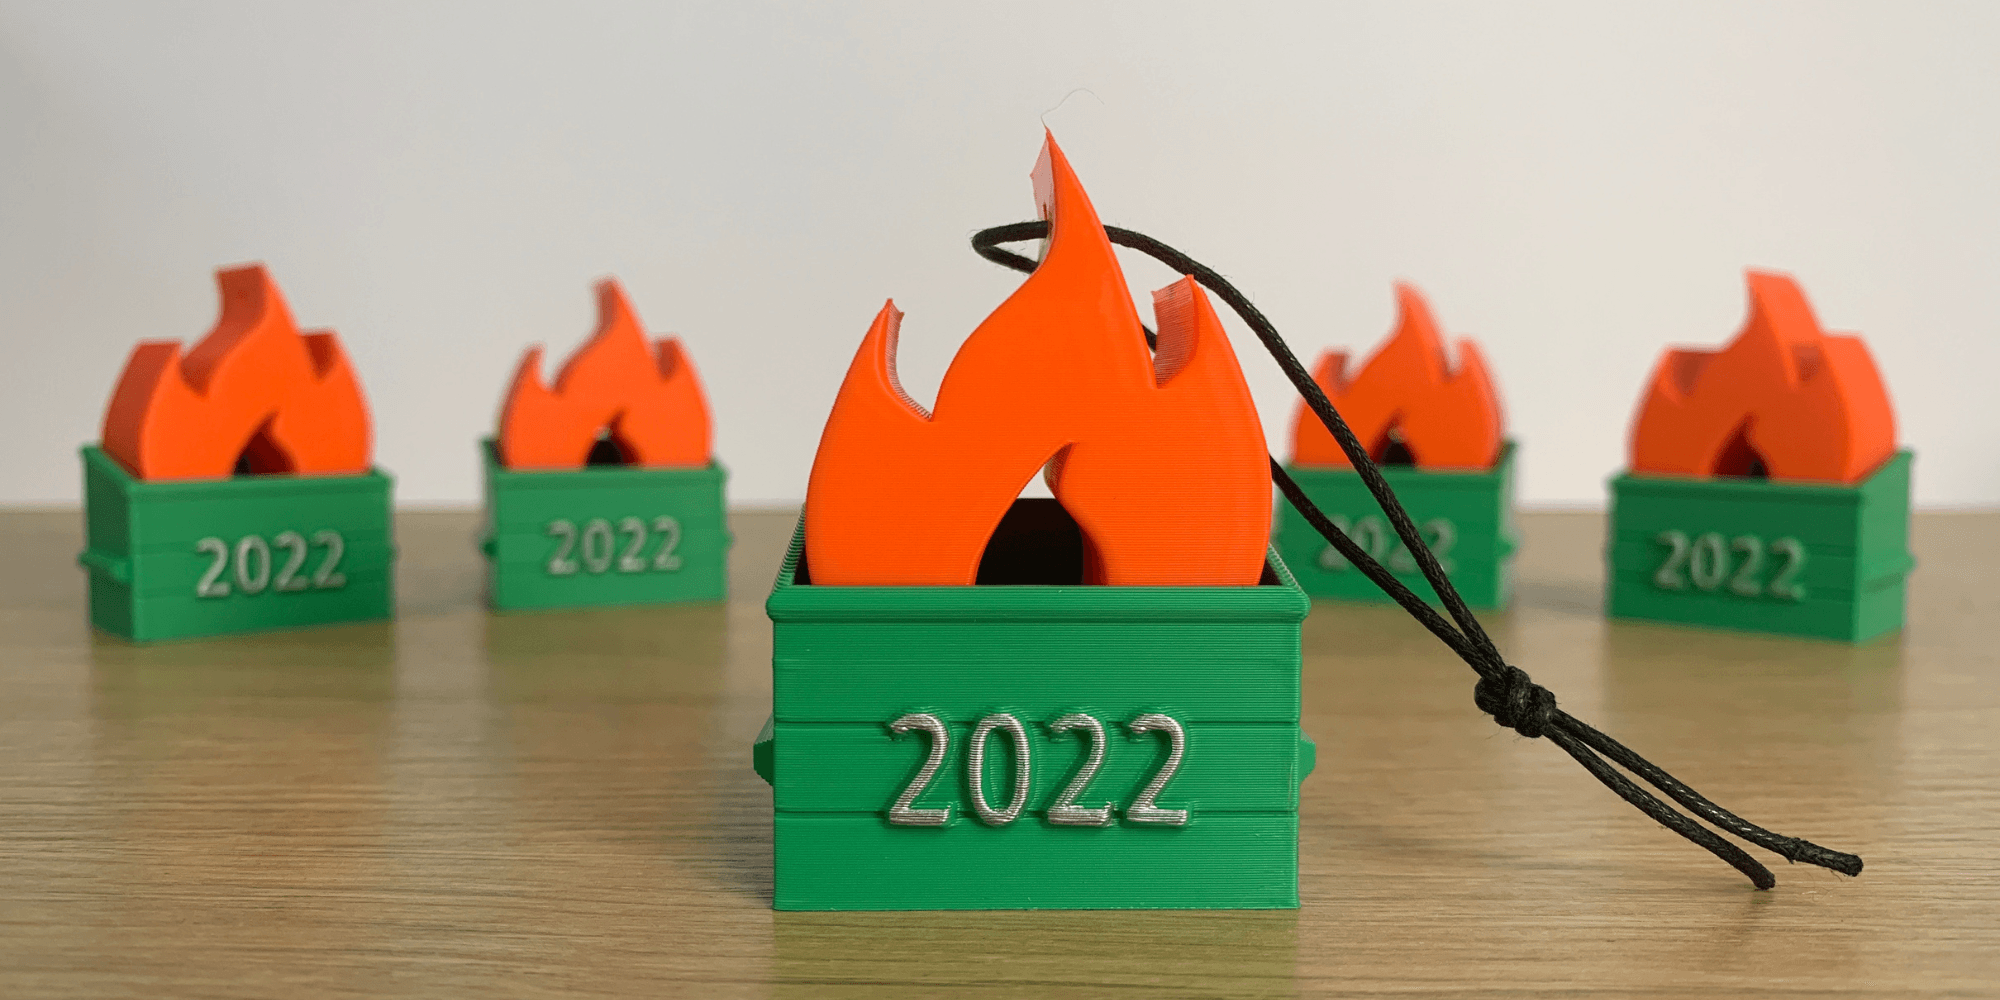 2023 Dumpster Fire 3d model